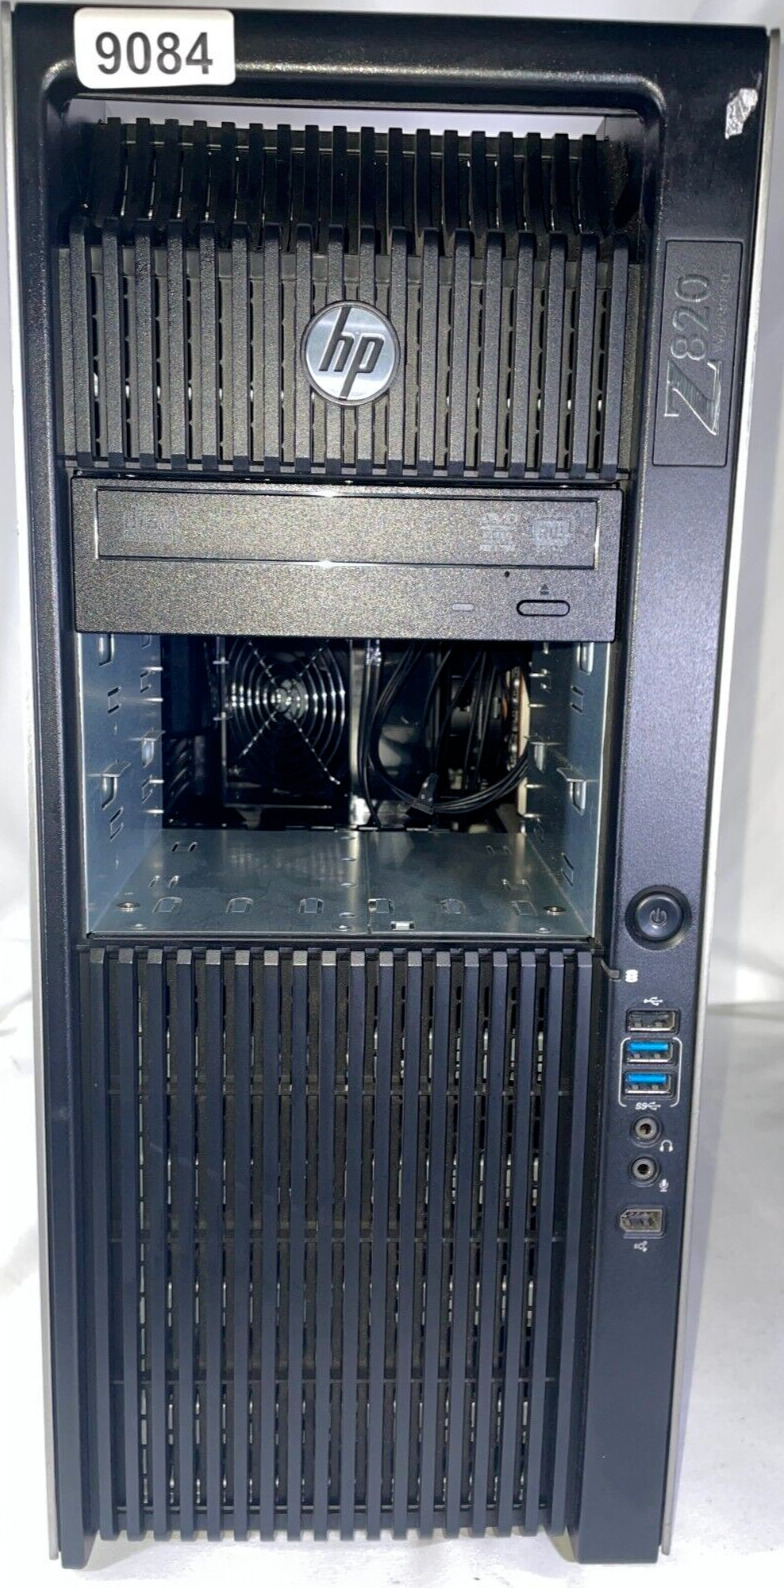 HP Z820 Workstation Dual Xeon E5-2687W 3.10GHz 2GB DDR3 Quadro FX 🚀 No HDD/OS